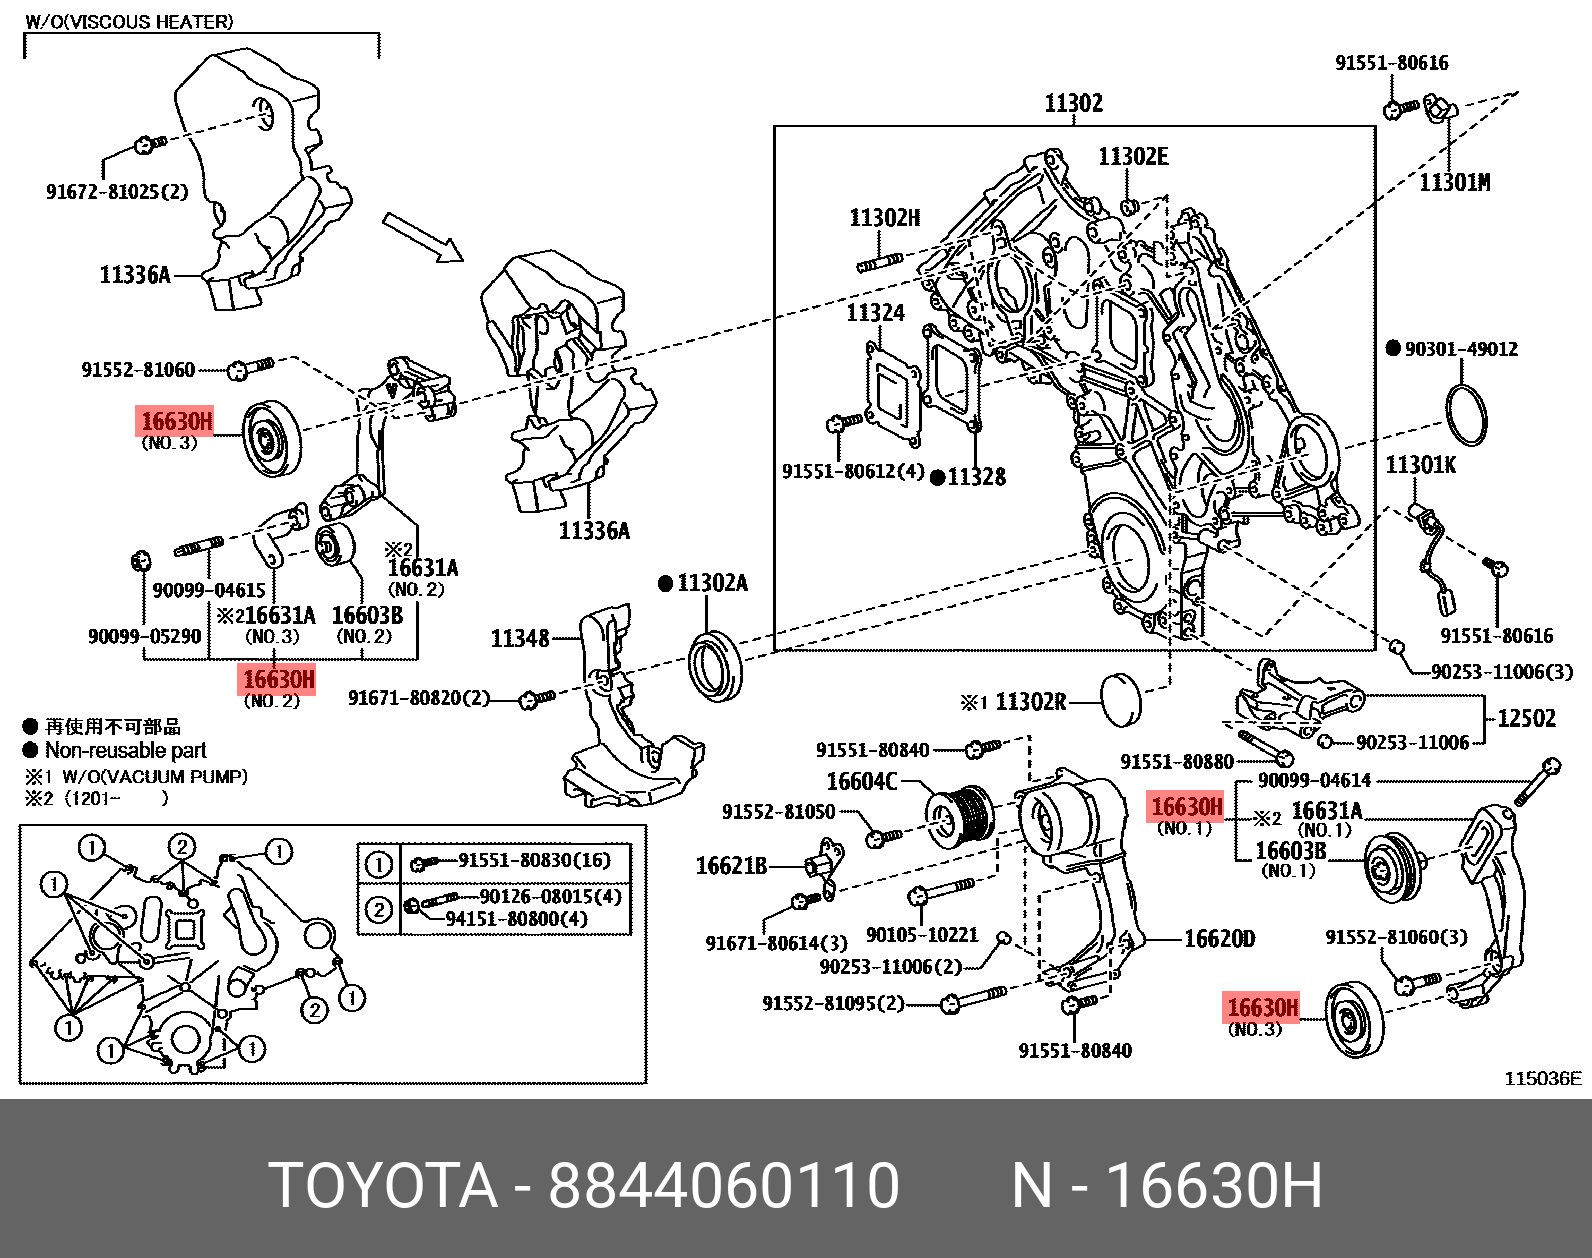 Ролик обводной приводного ремня - Toyota 88440-60110